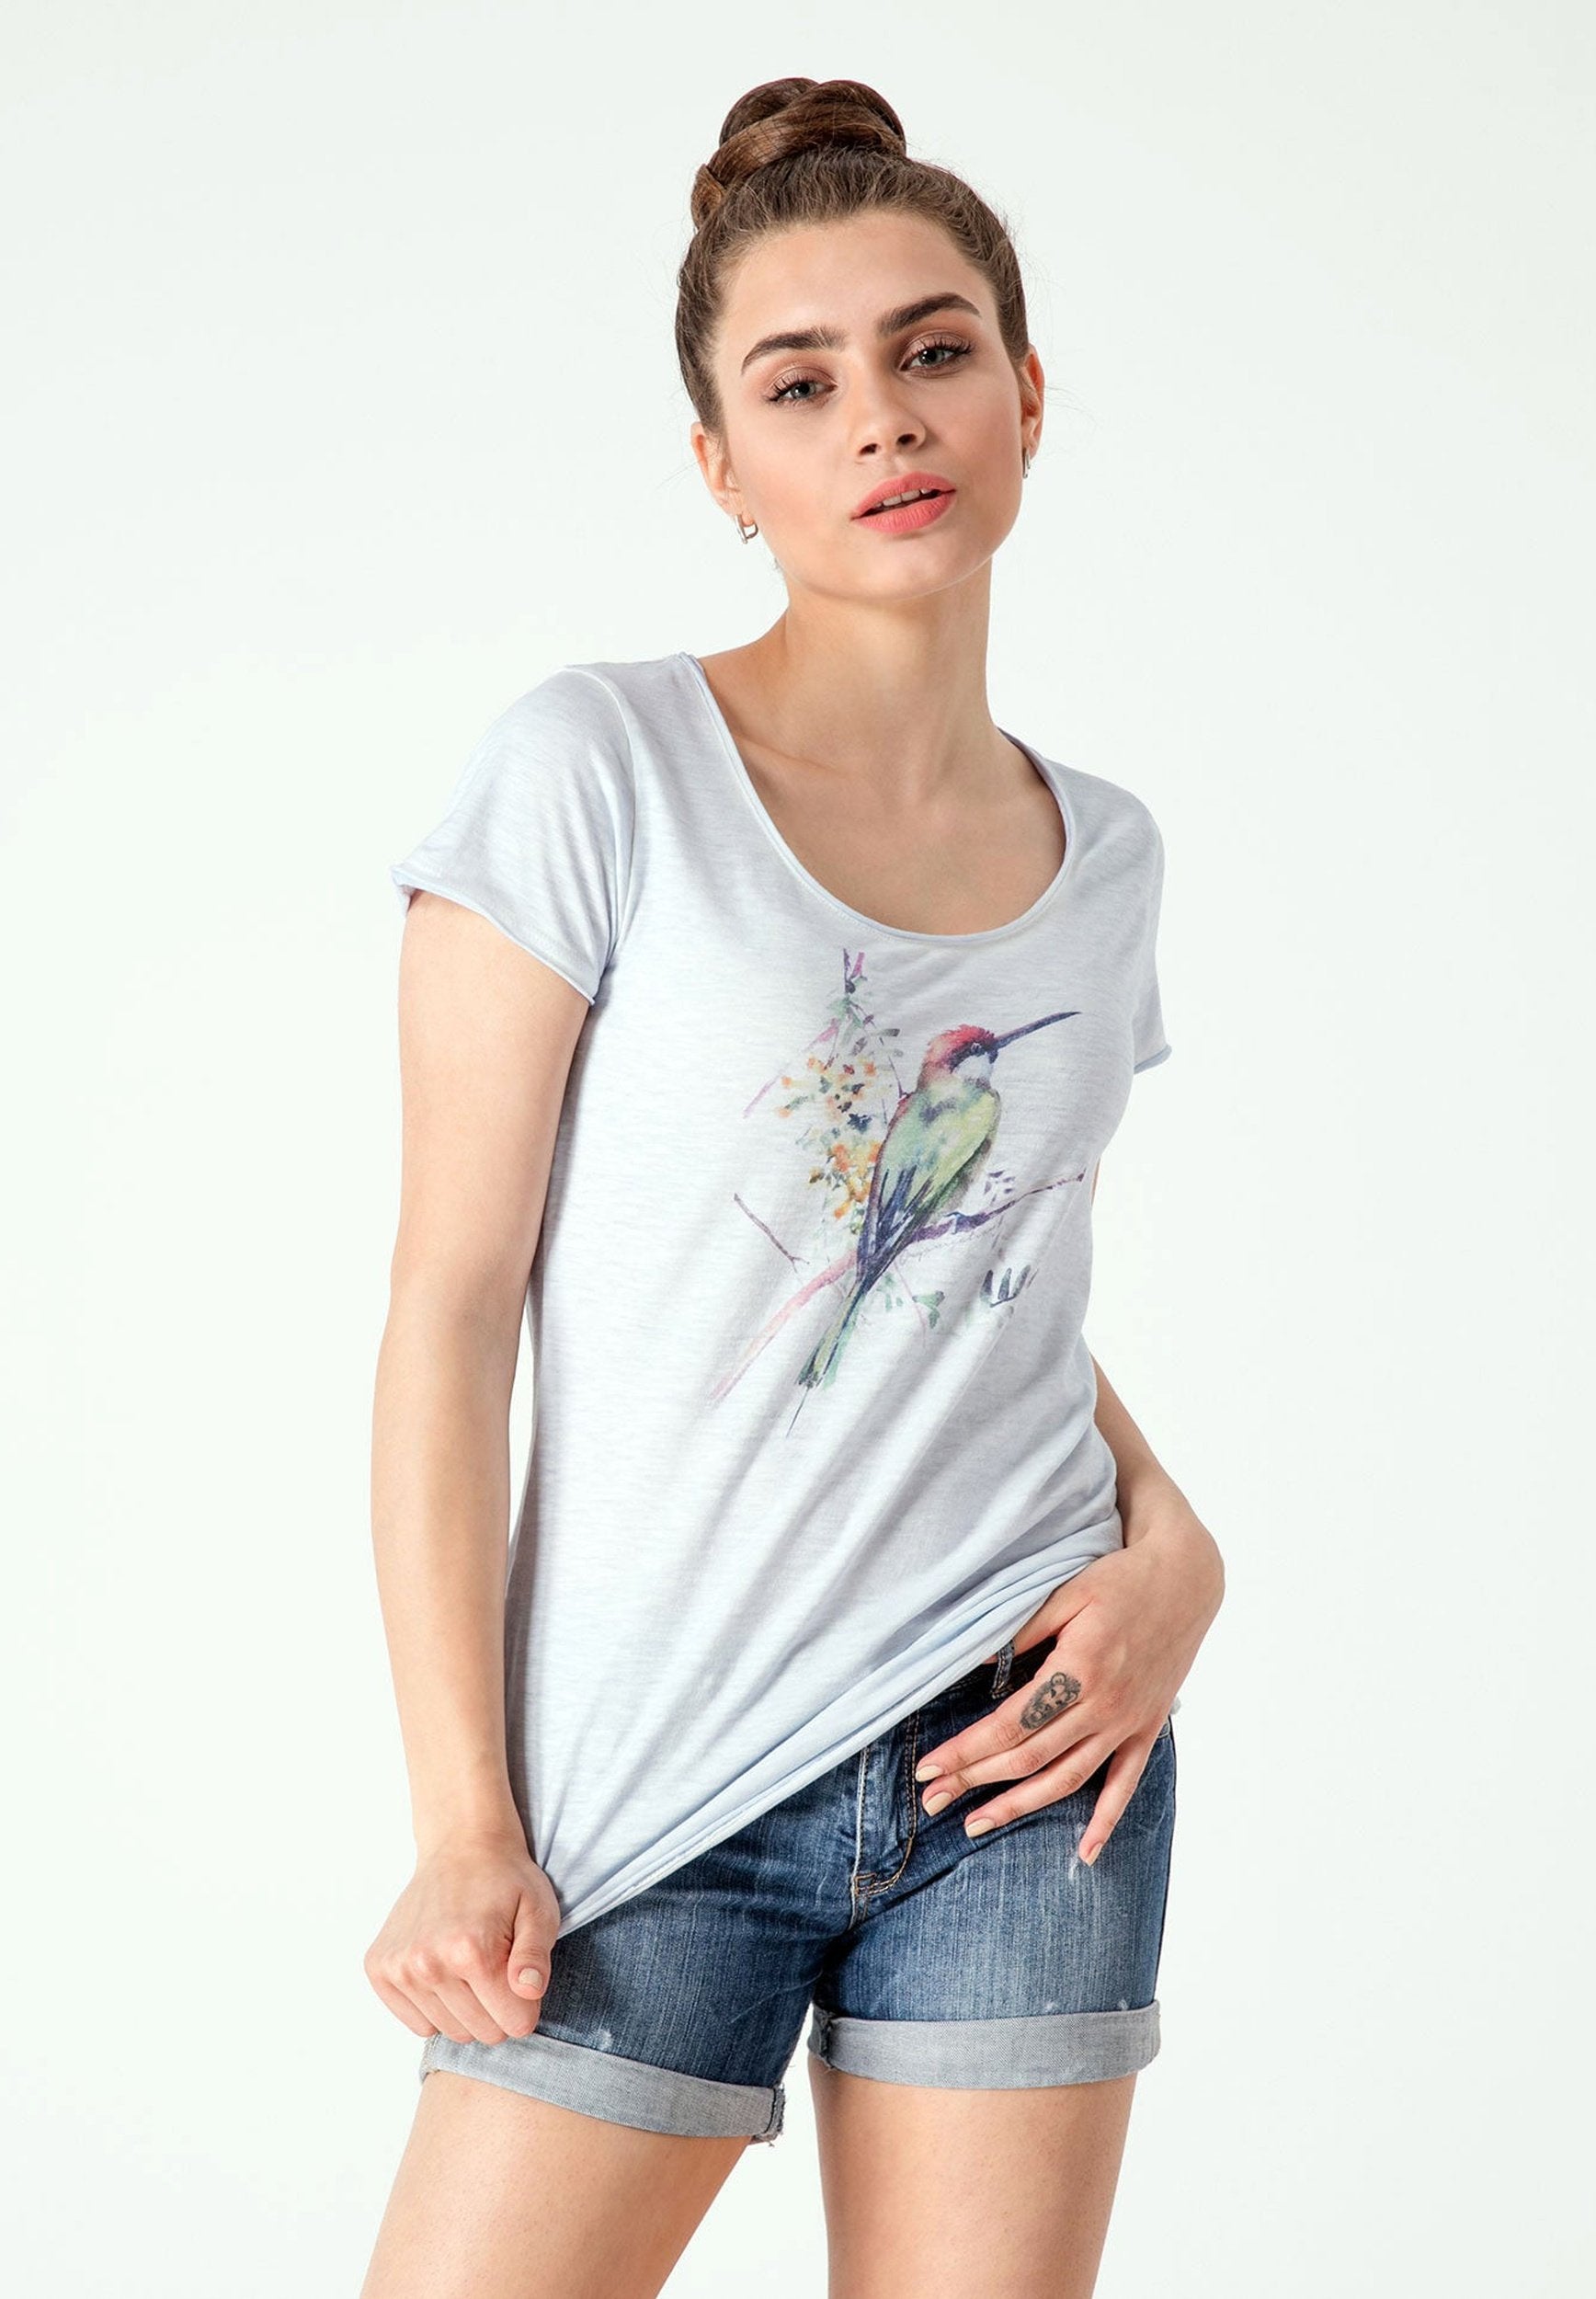 Bedrucktes T-Shirt aus Bio-Baumwolle mit Vogel Motive